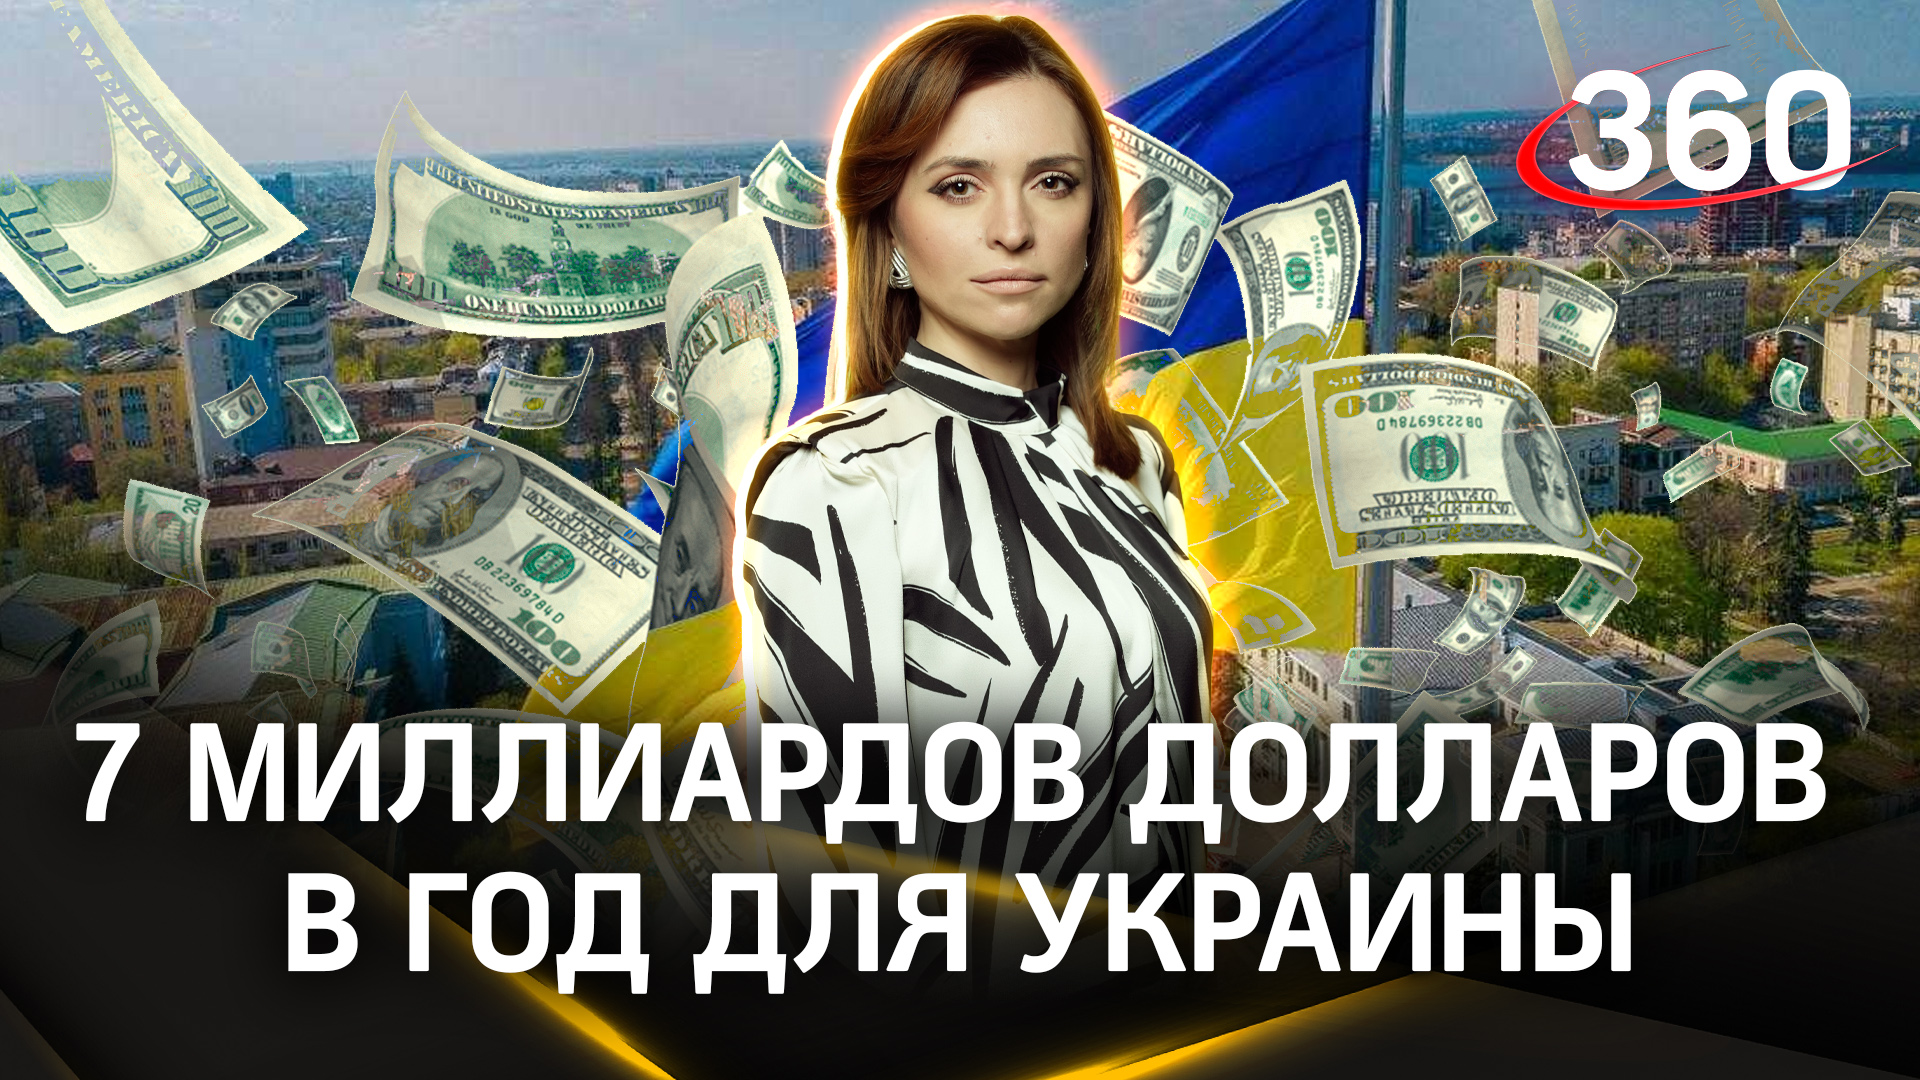 7 миллиардов долларов в год: названа сумма, на которую сможет рассчитывать Киев |Екатерина Малашенко